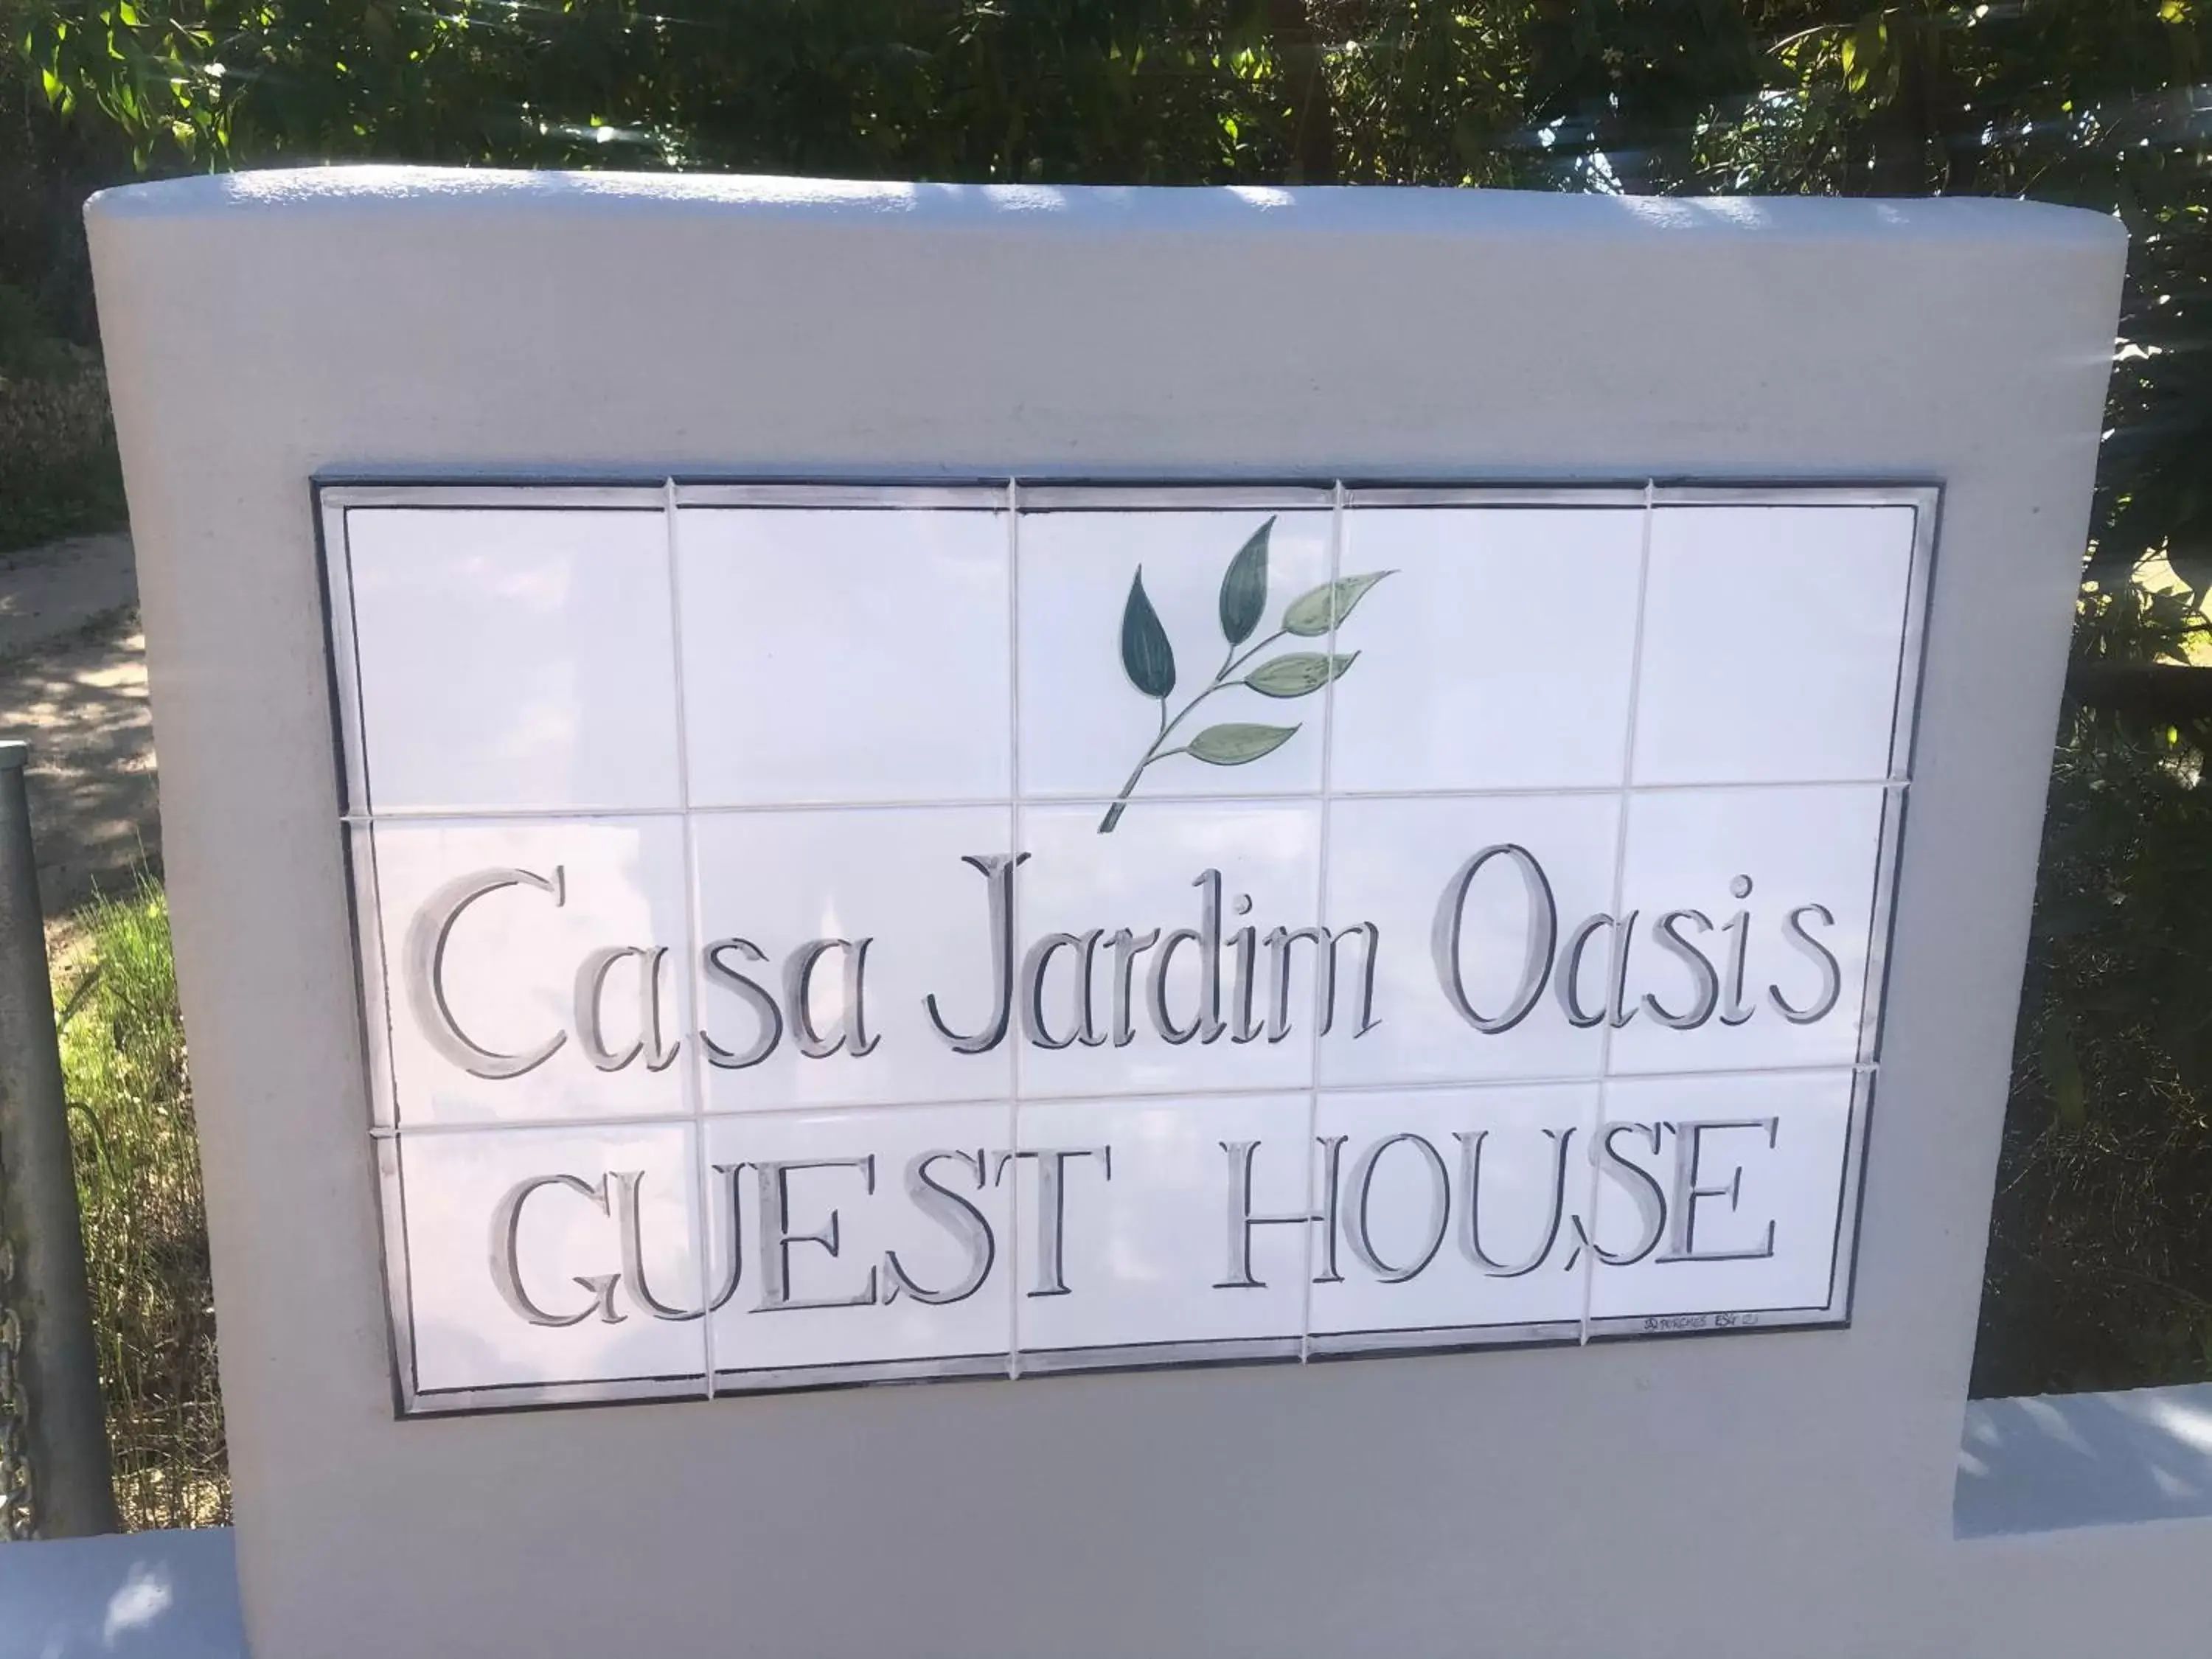 Facade/entrance in Casa Jardim Oasis